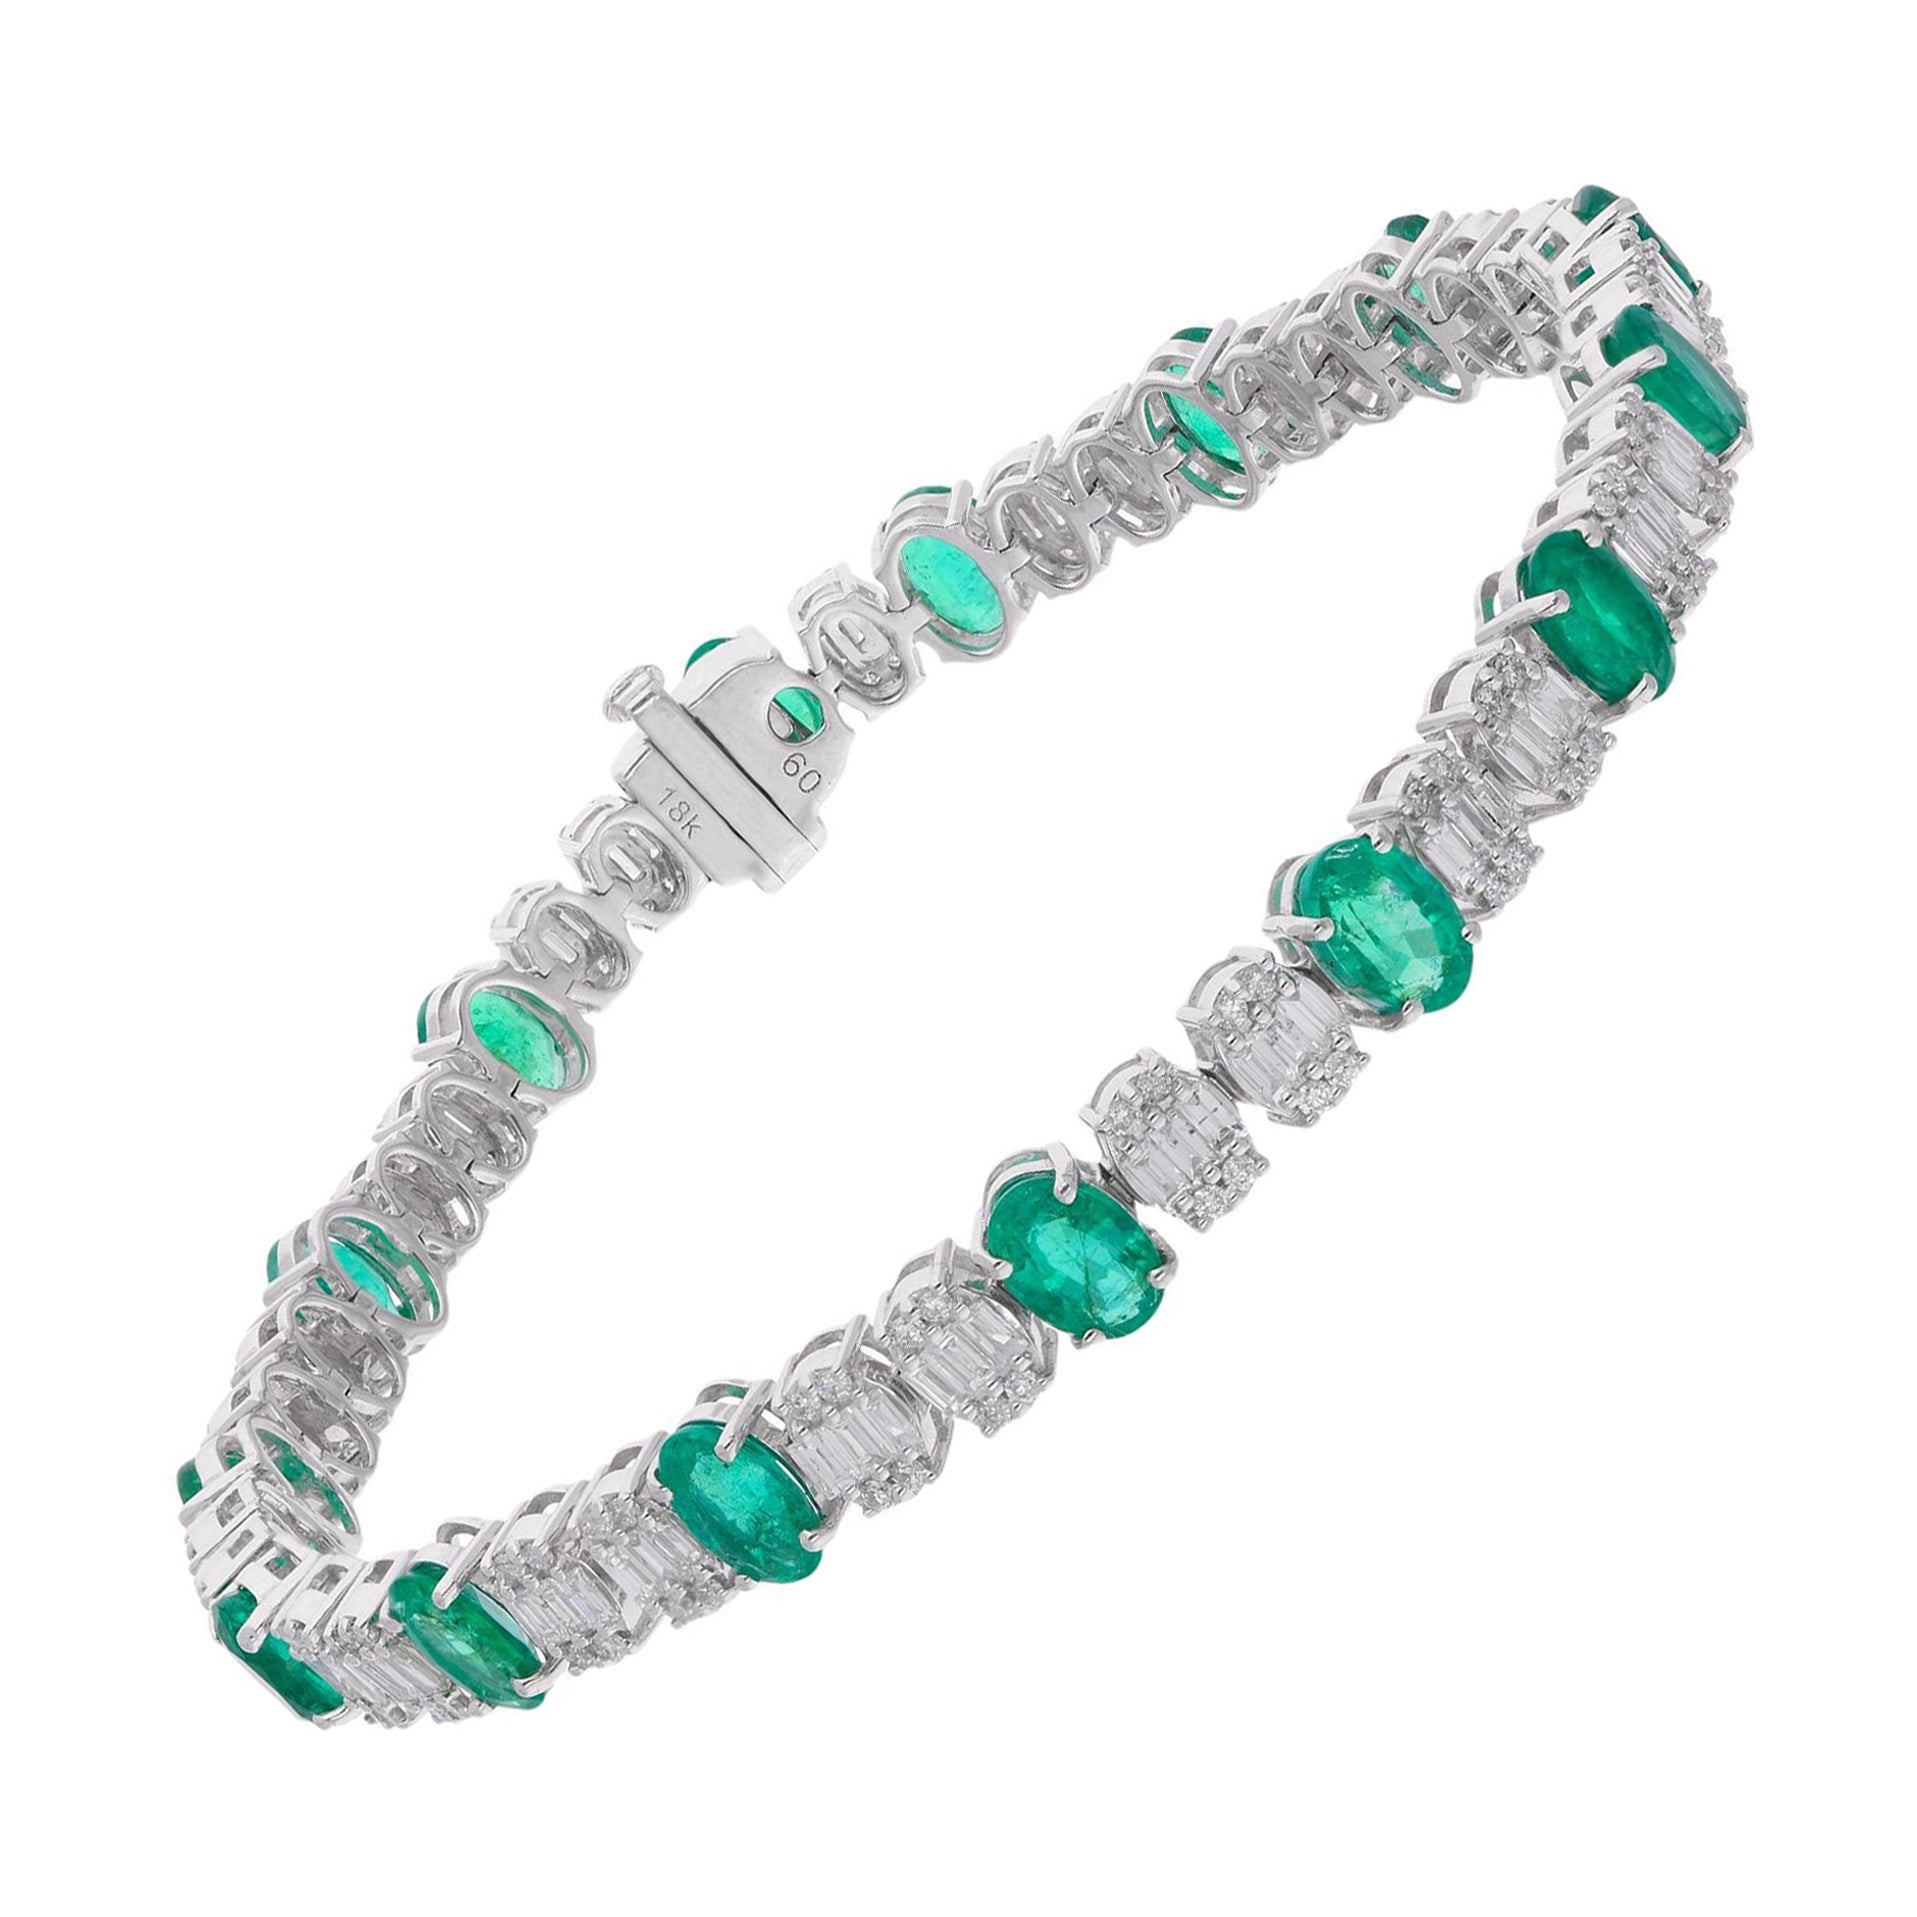 Oval Zambian Emerald Gemstone Bracelet Baguette Diamond 14 Kt White Gold Jewelry For Sale